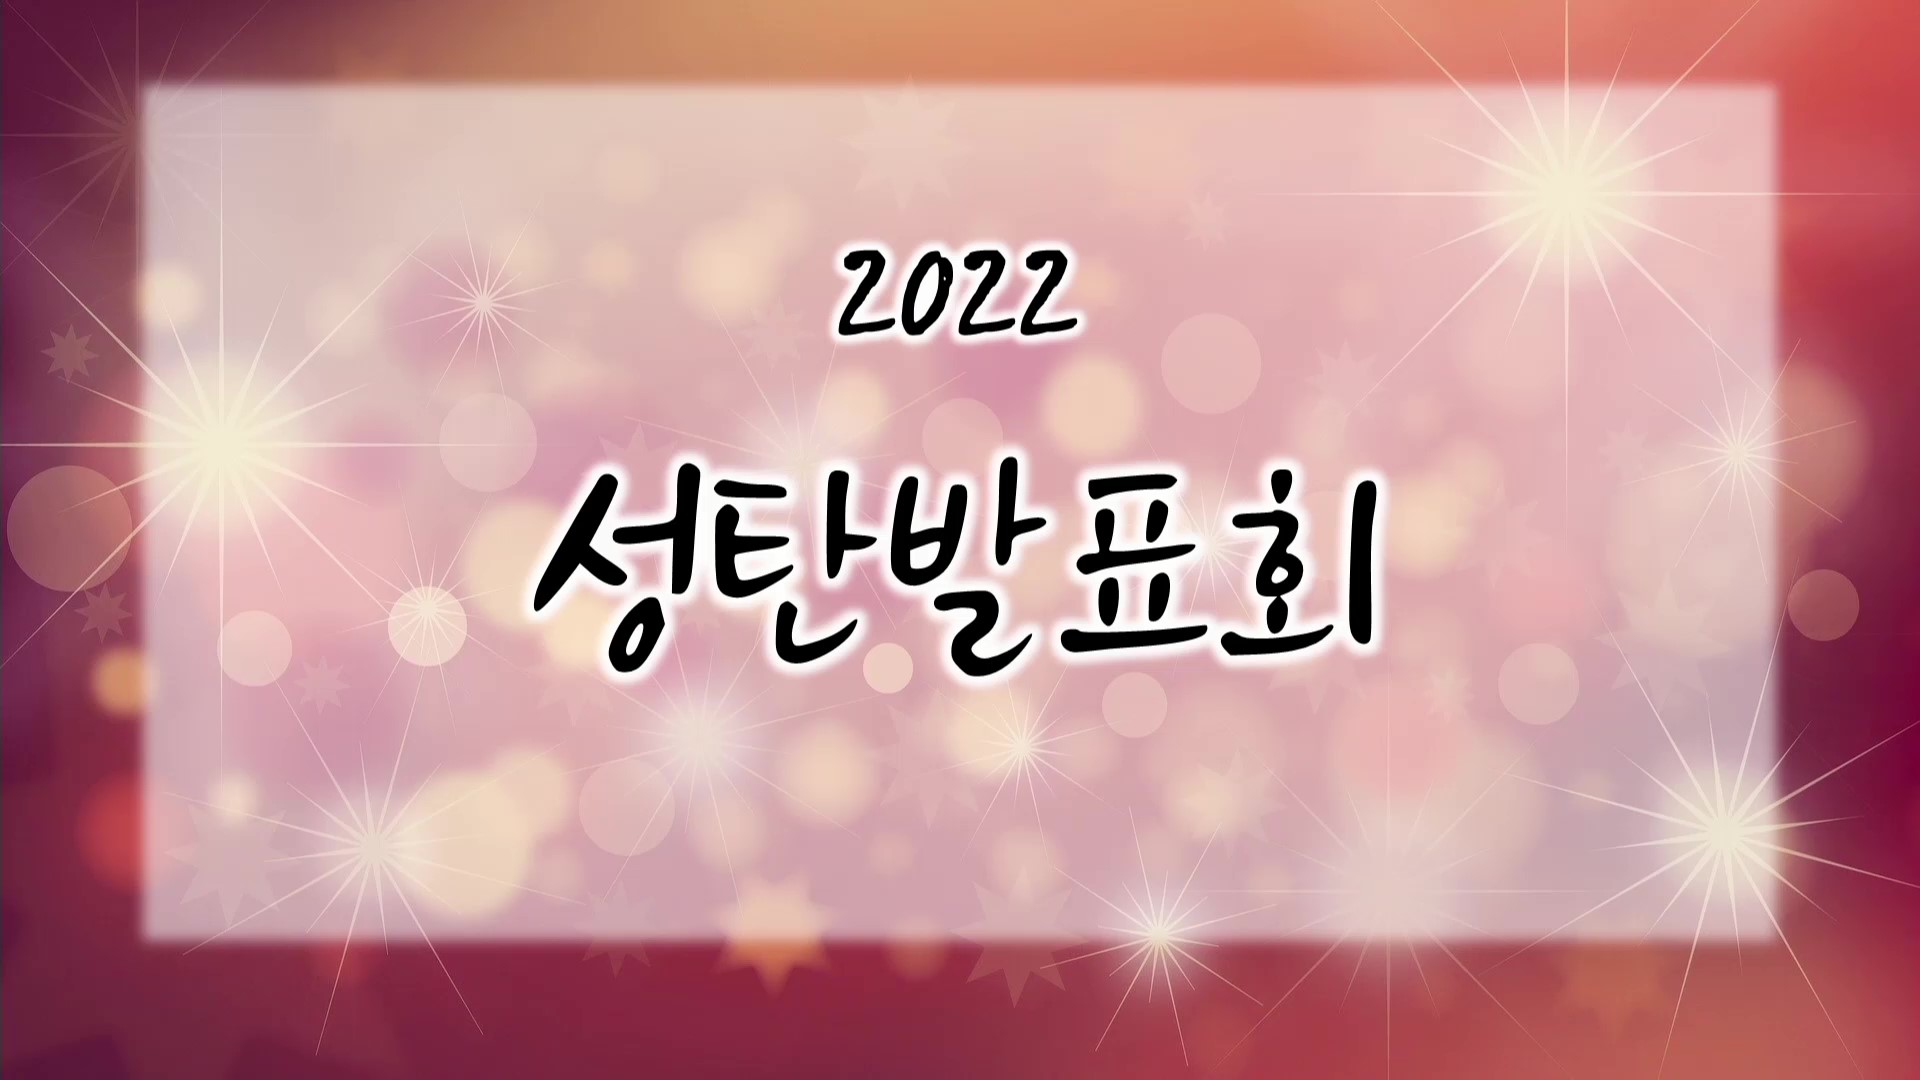 20221225 성탄발표회_Moment.jpg